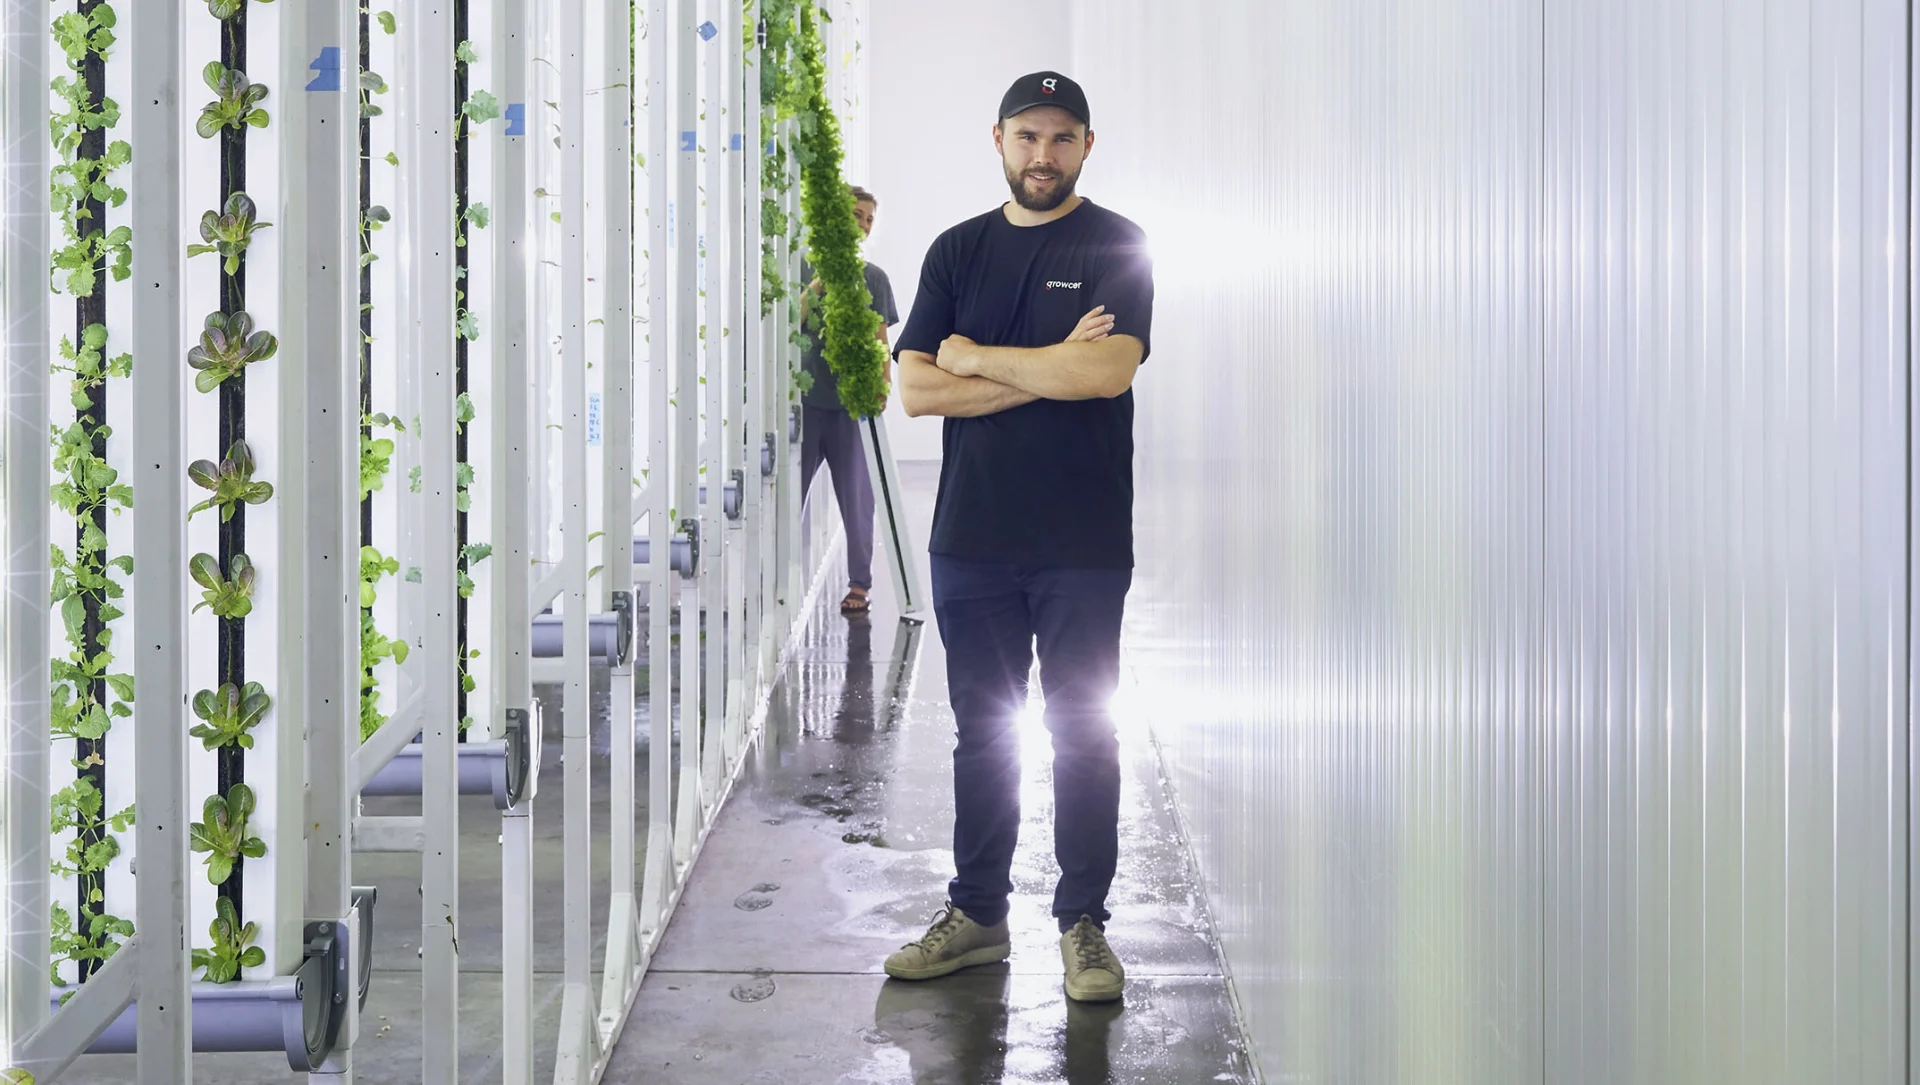 Gründer von Growcer, Marcel Florian steht inmitten der vertikal-wachsenden Pflanzen